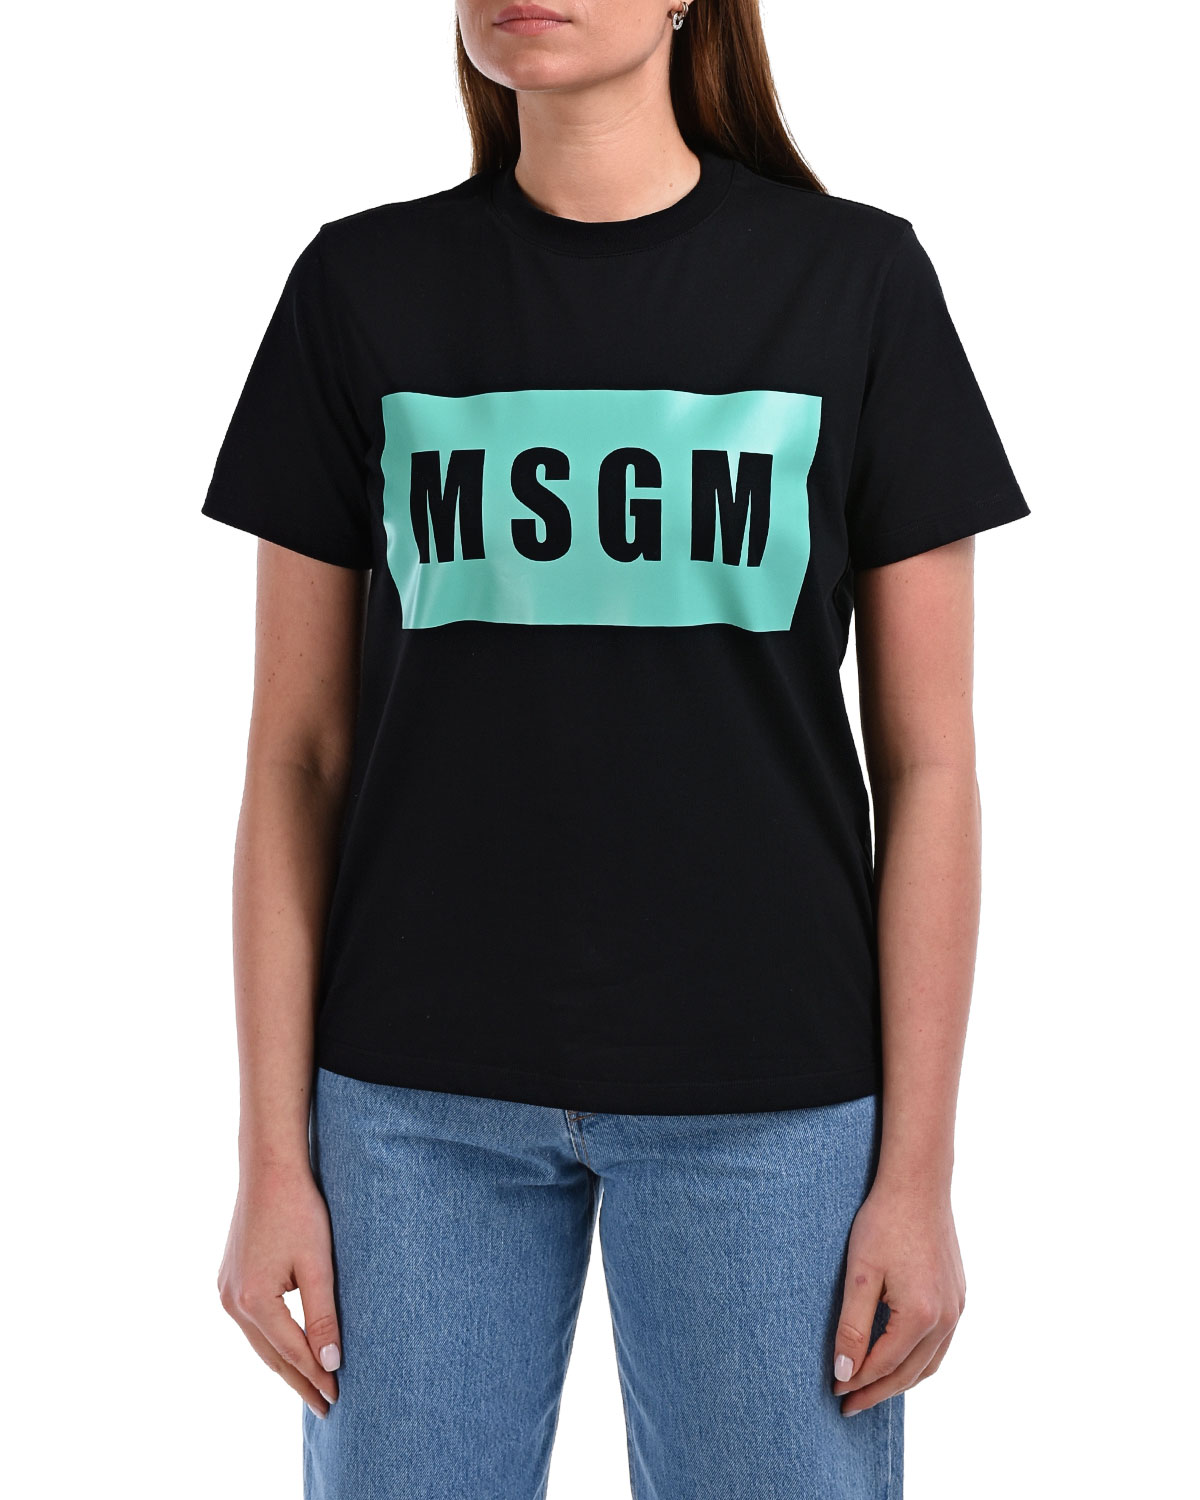 Черная футболка с прямоугольным принтом MSGM, размер 40, цвет черный - фото 8